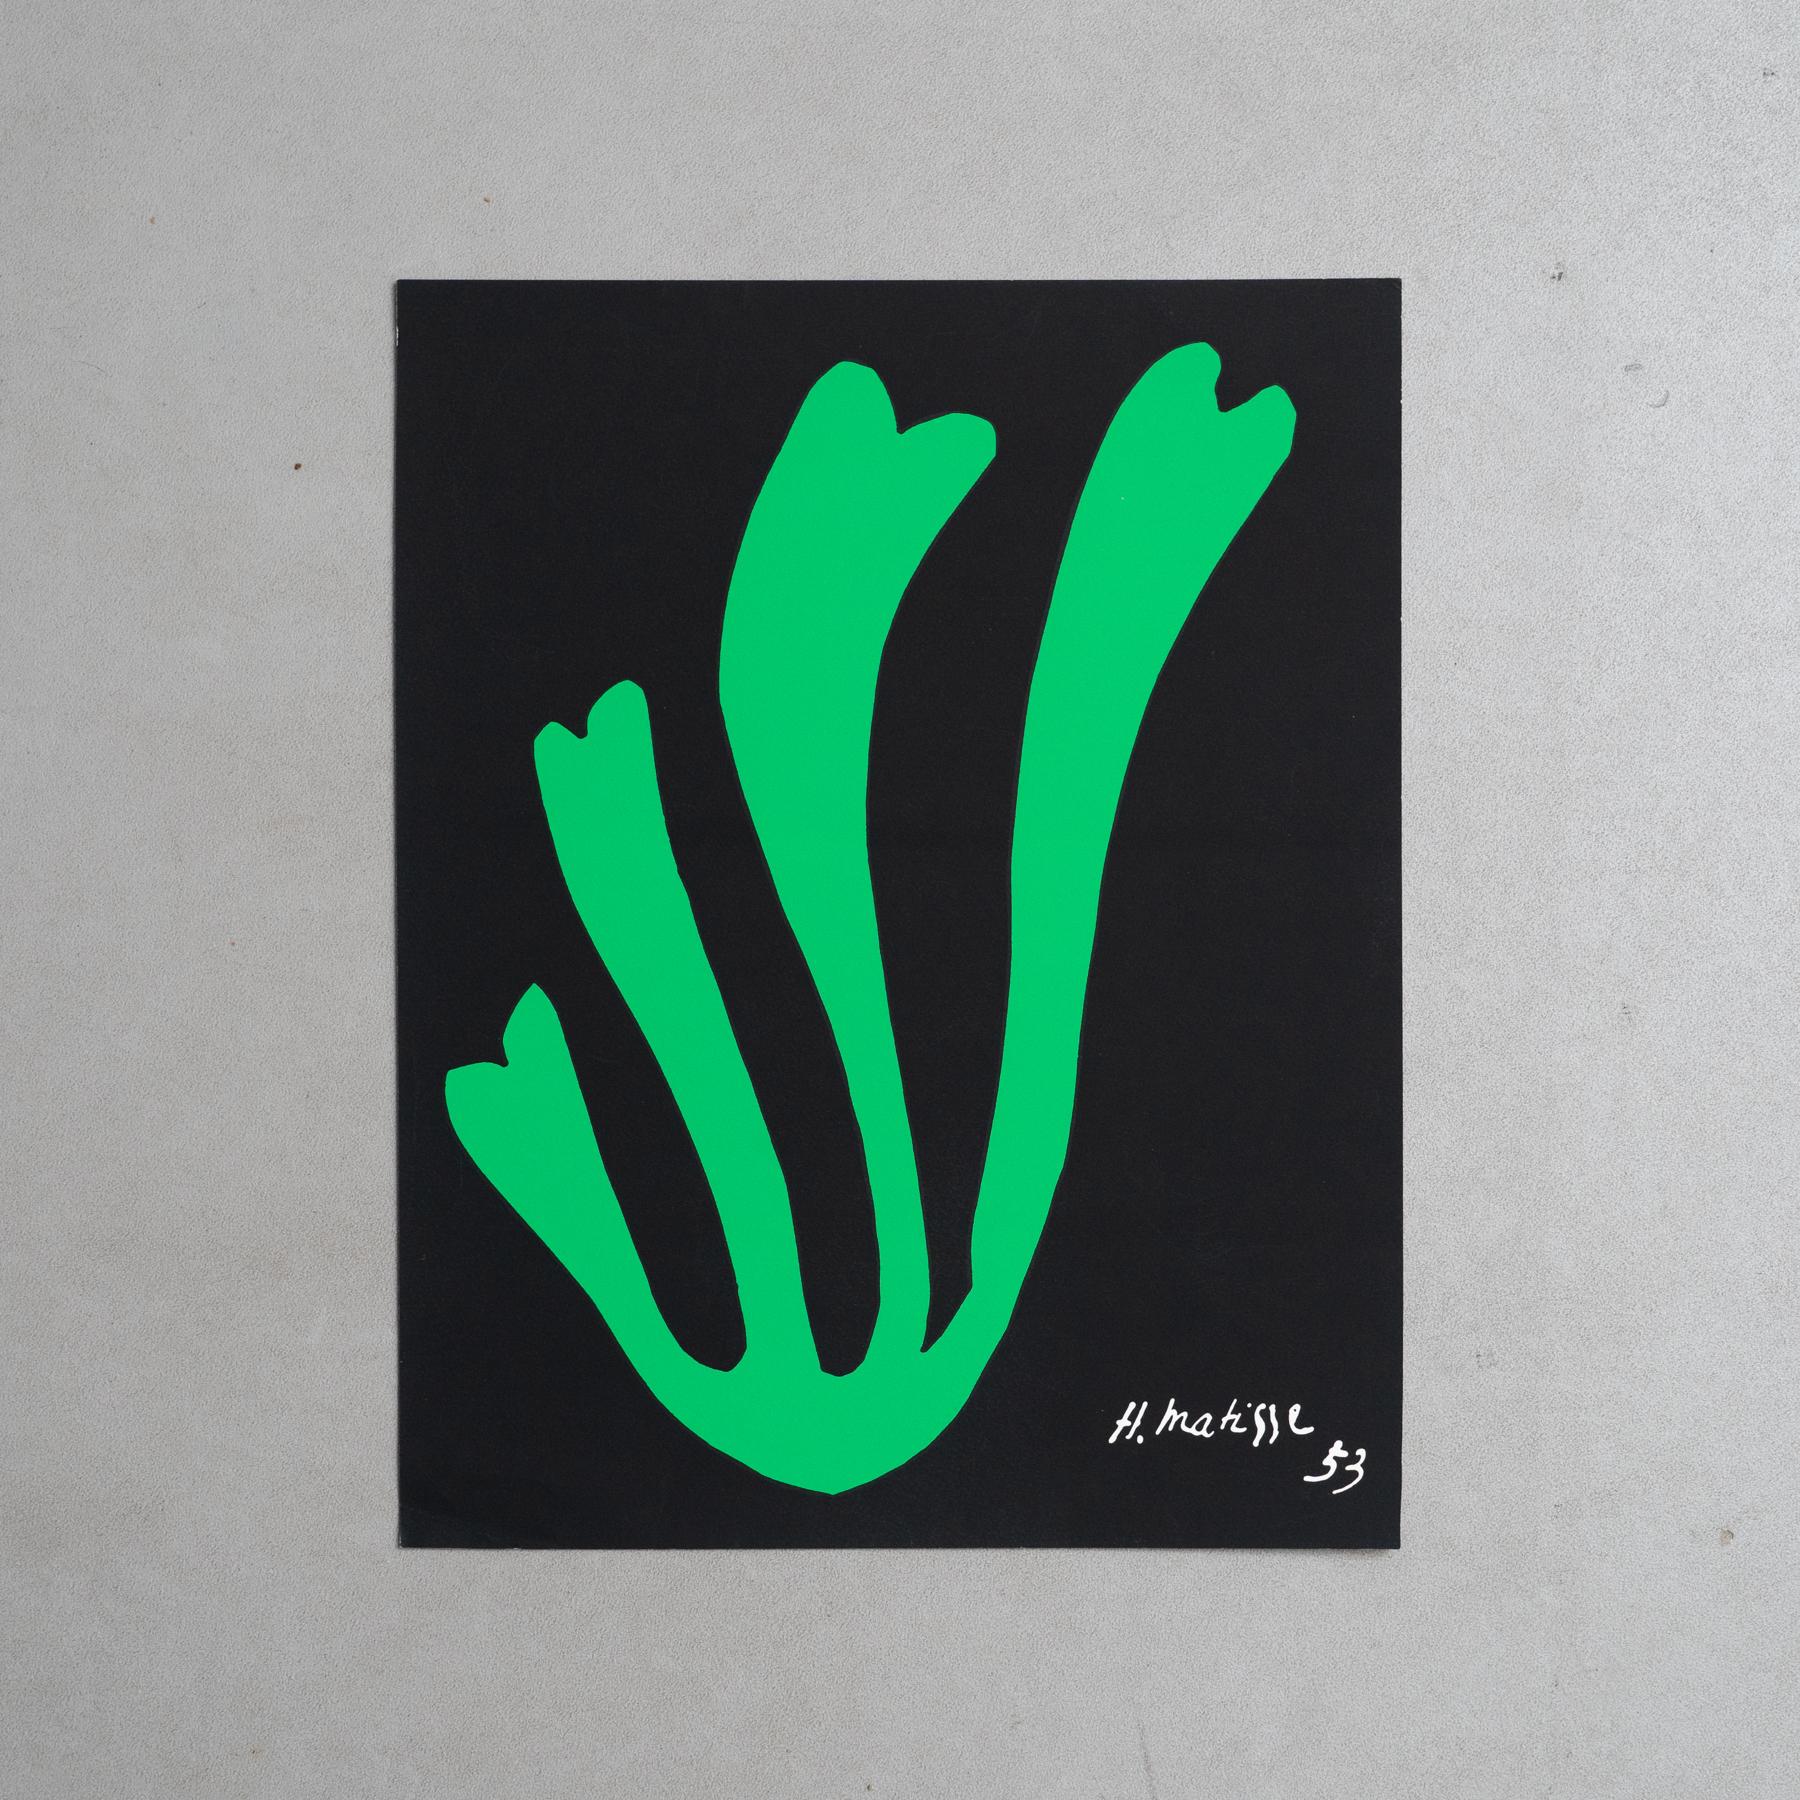 Tauchen Sie ein in die zeitlose Brillanz der künstlerischen Meisterschaft von Henri Matisse mit dieser fesselnden Farblithografie aus seiner verehrten Cut Out Serie. Dieses 1953 geschaffene und in den 1970er Jahren von Nouvelle Images sorgfältig